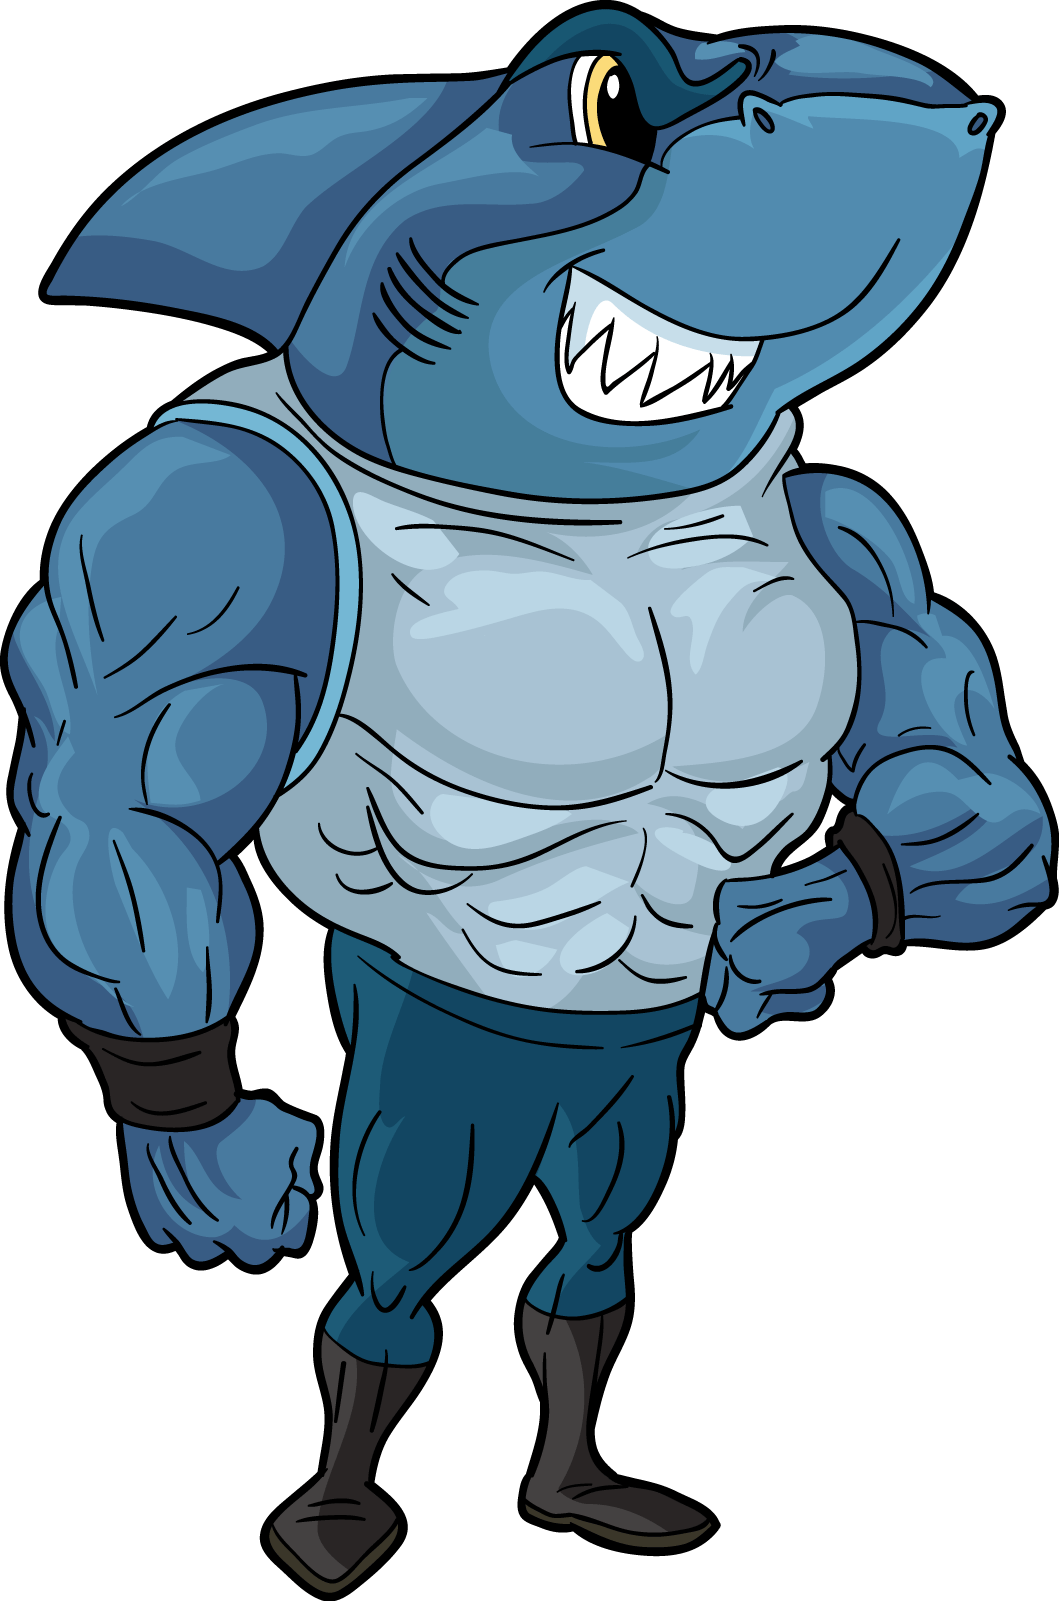 Cartoon Shark - Shark With Legs And Arms (1059x1601)